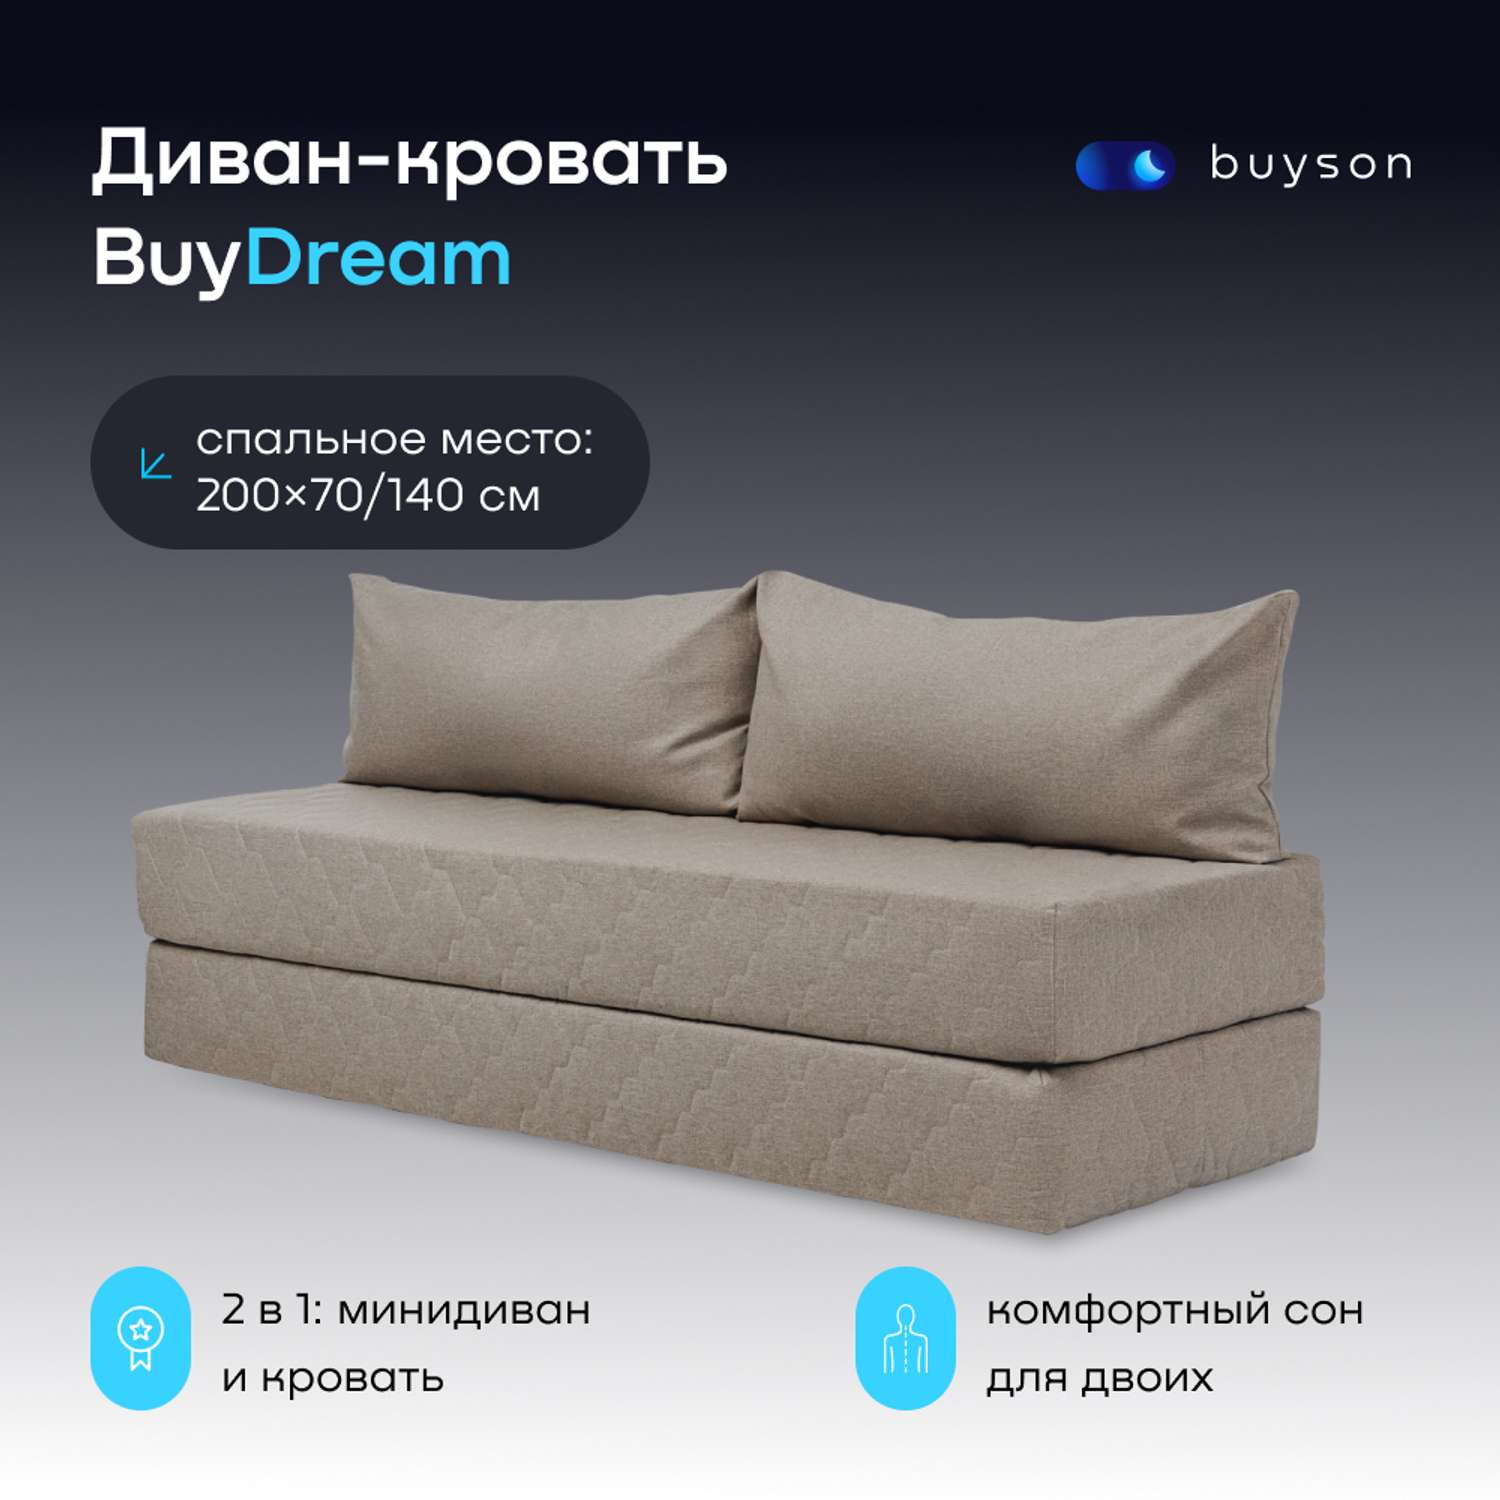 Бескаркасный диван-кровать buyson BuyDream бежевая рогожка - фото 1